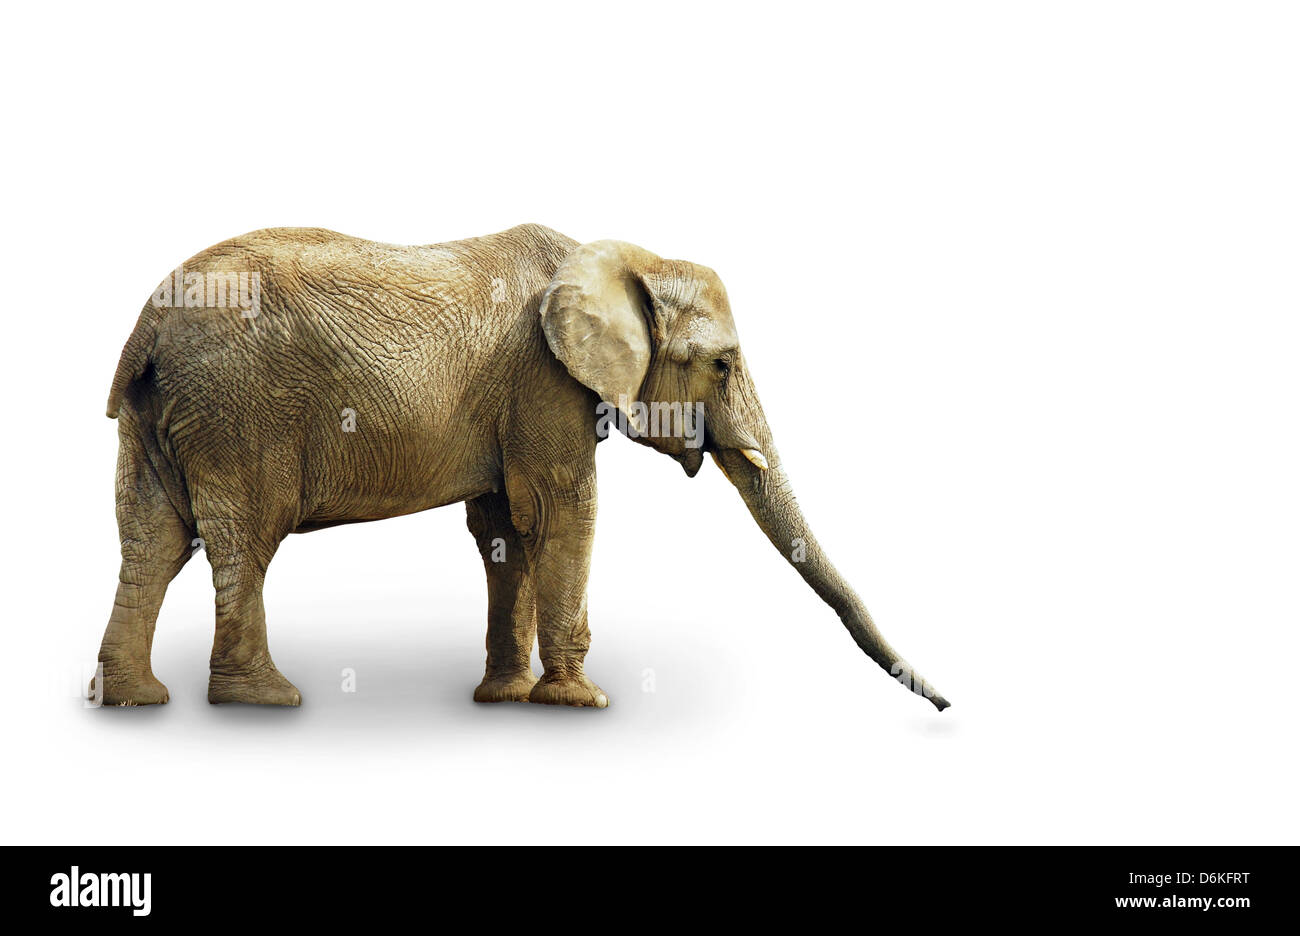 Corps complet de l'éléphant africain isolé sur fond blanc Banque D'Images